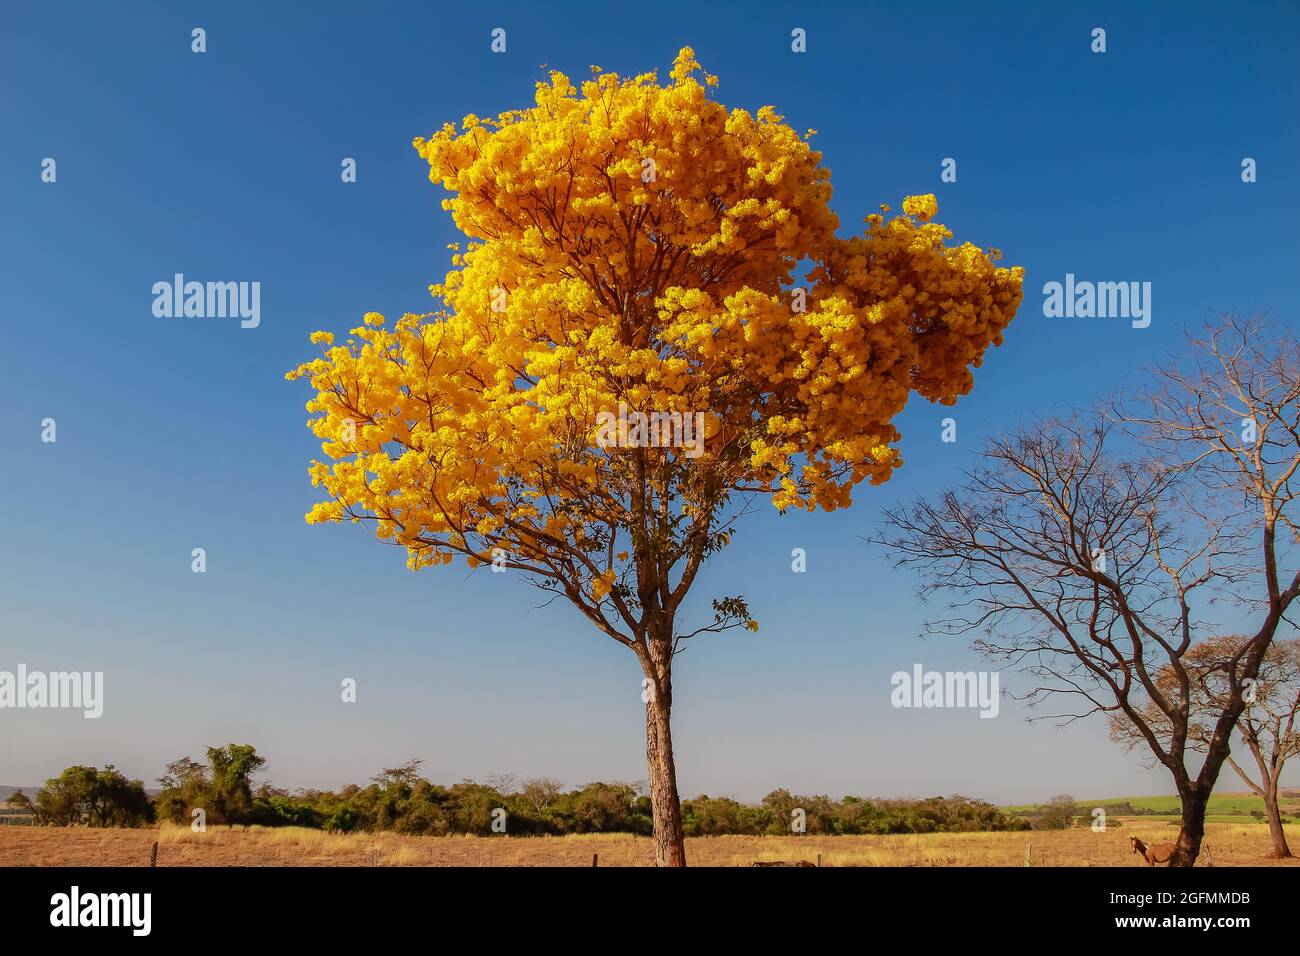 Albero di ipe immagini e fotografie stock ad alta risoluzione - Alamy